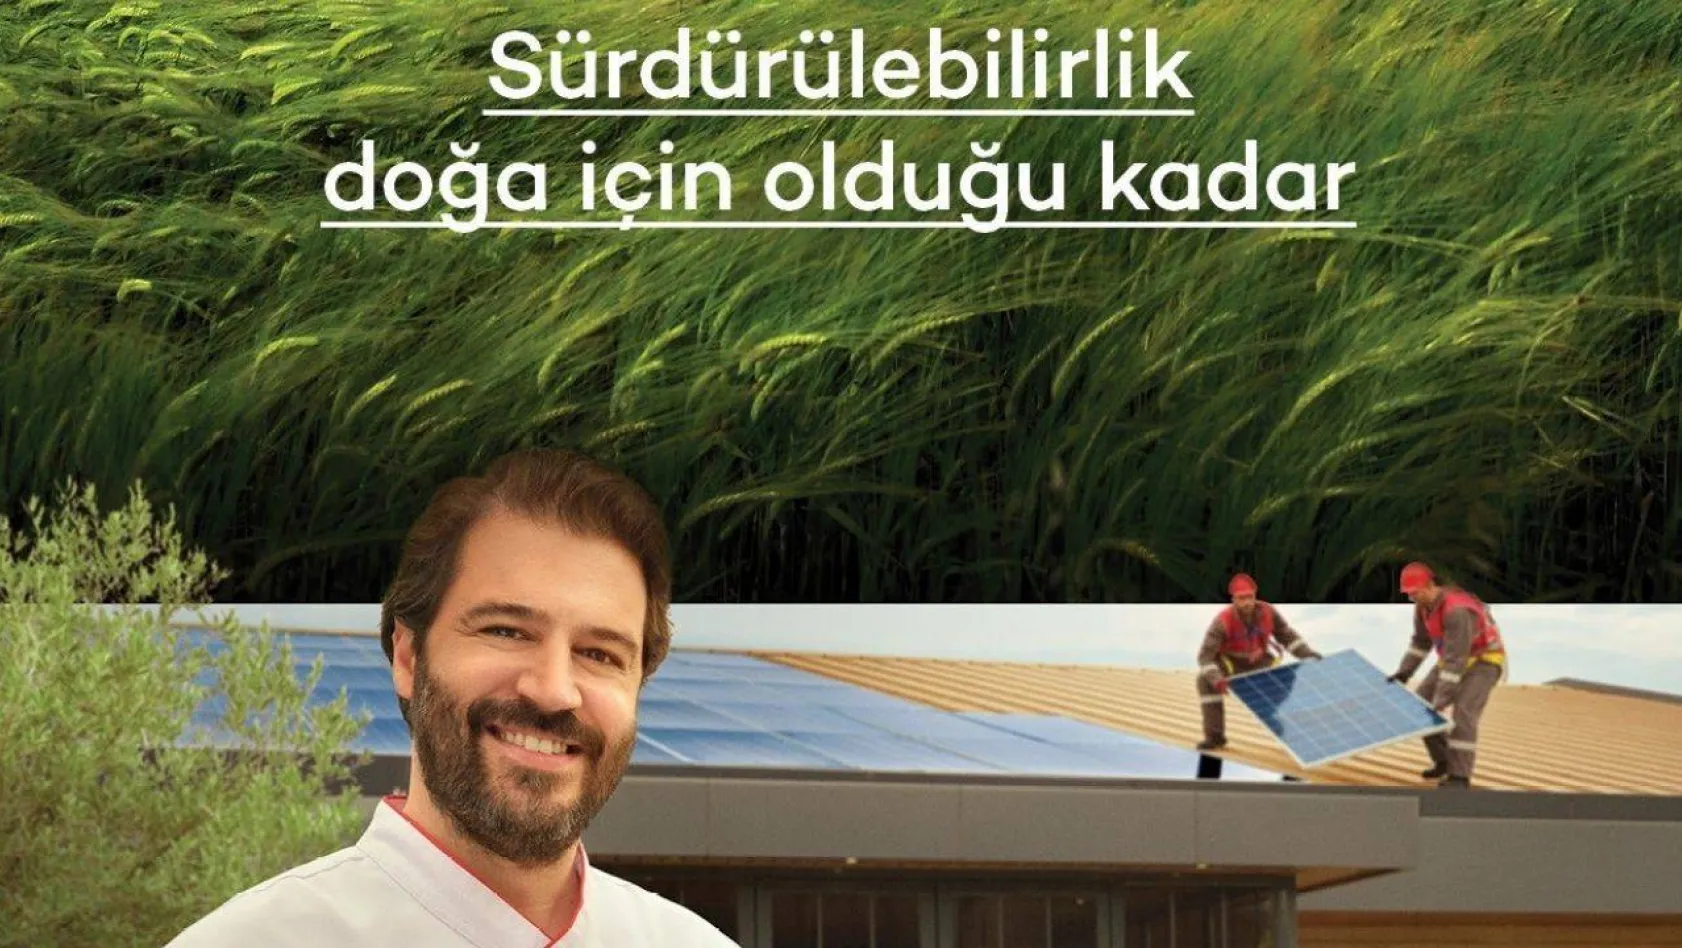 Akbank, sürdürülebilirlik odaklı yeni reklam filmini yayınladı